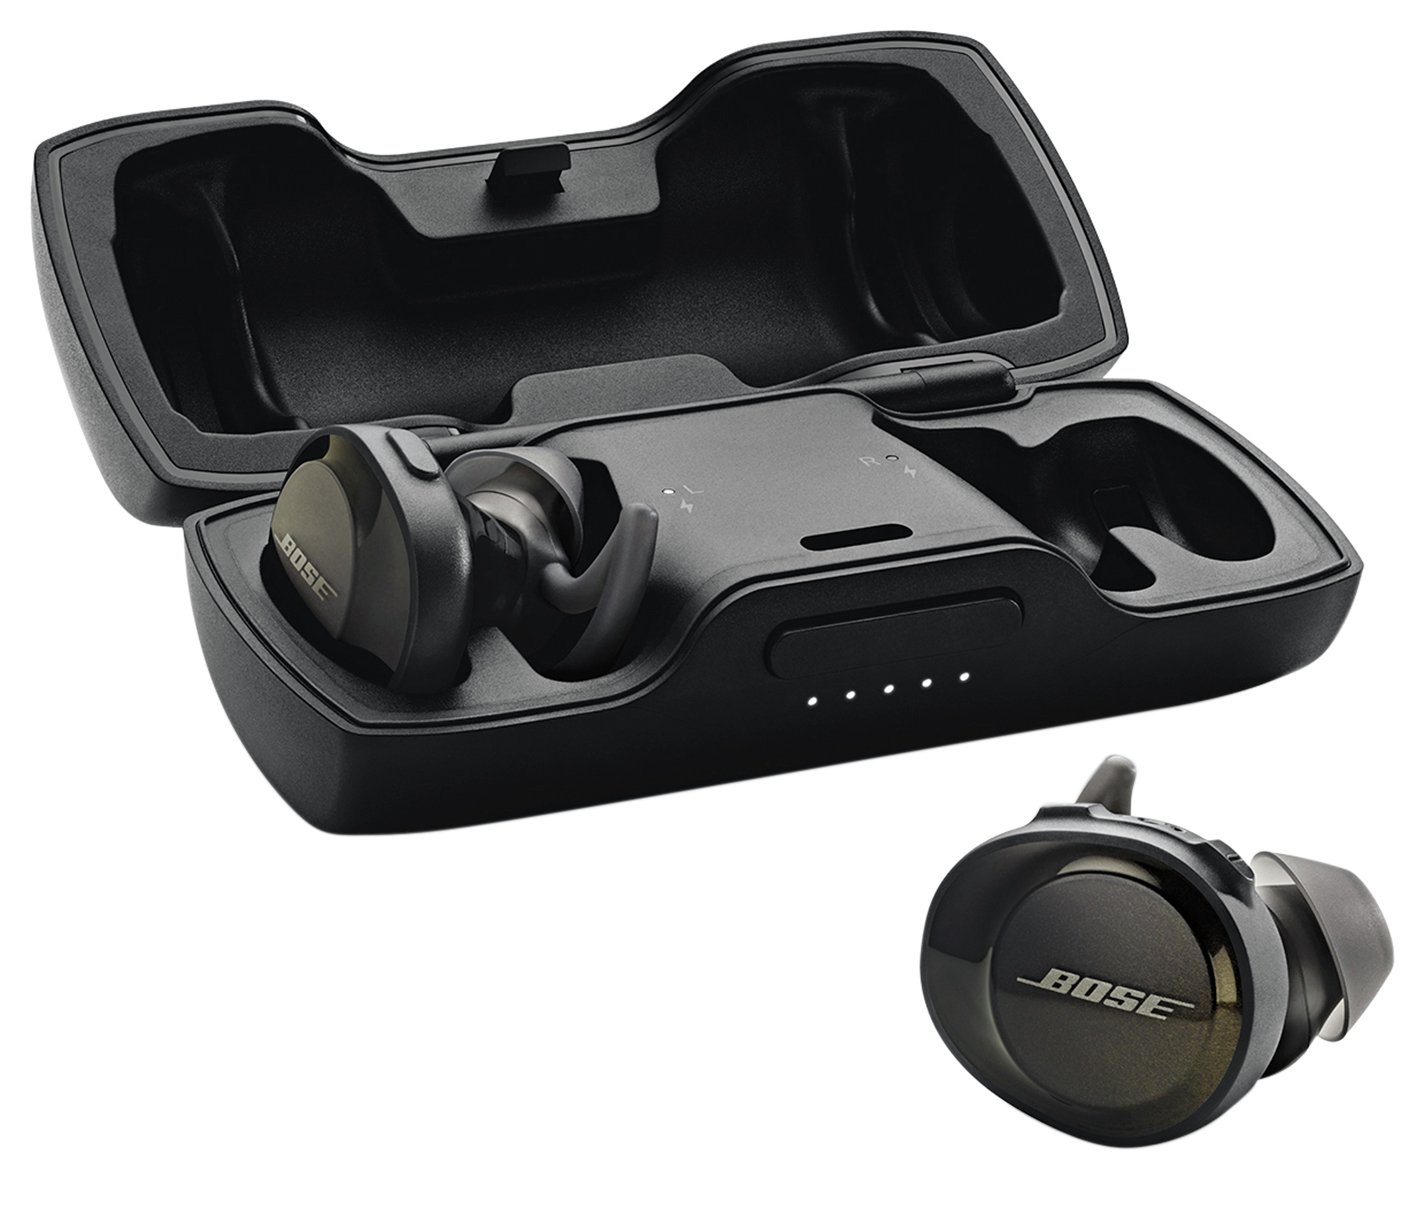 Bose SoundSport Free Wireless In-Ear Headphones - Black